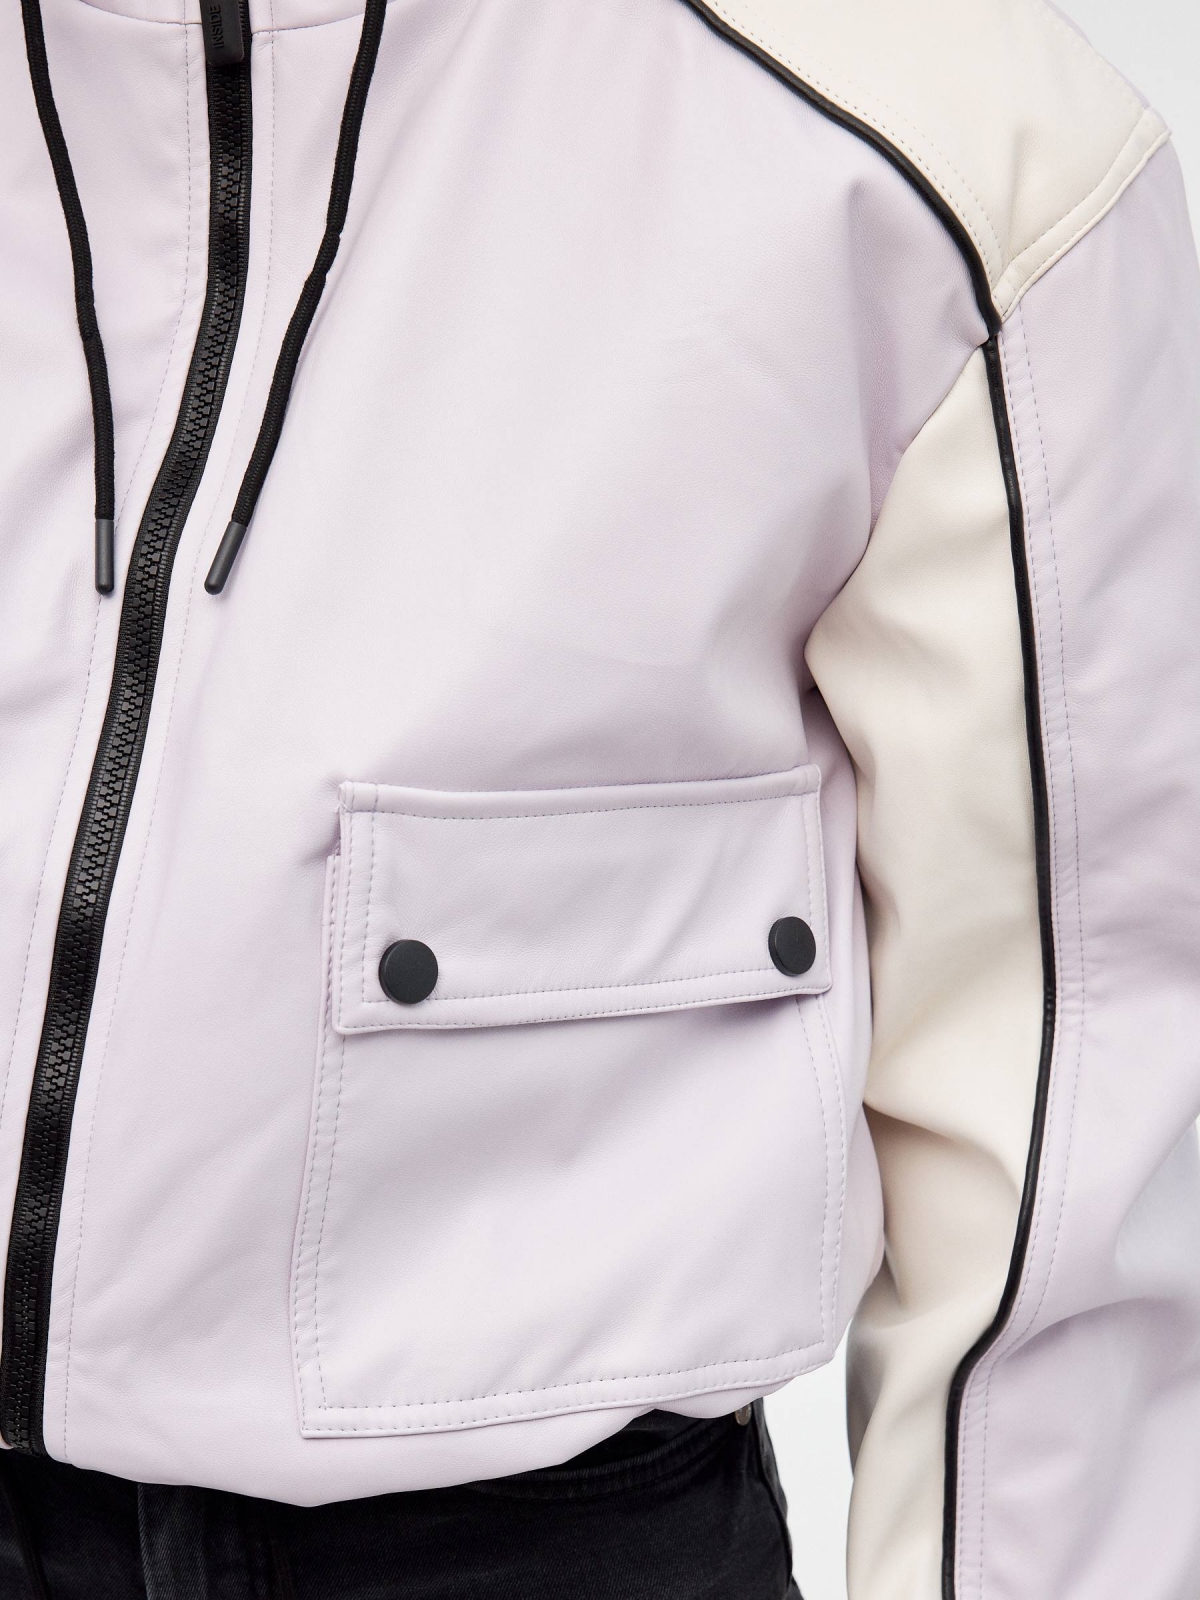 Leatherette jacket mauve detail view